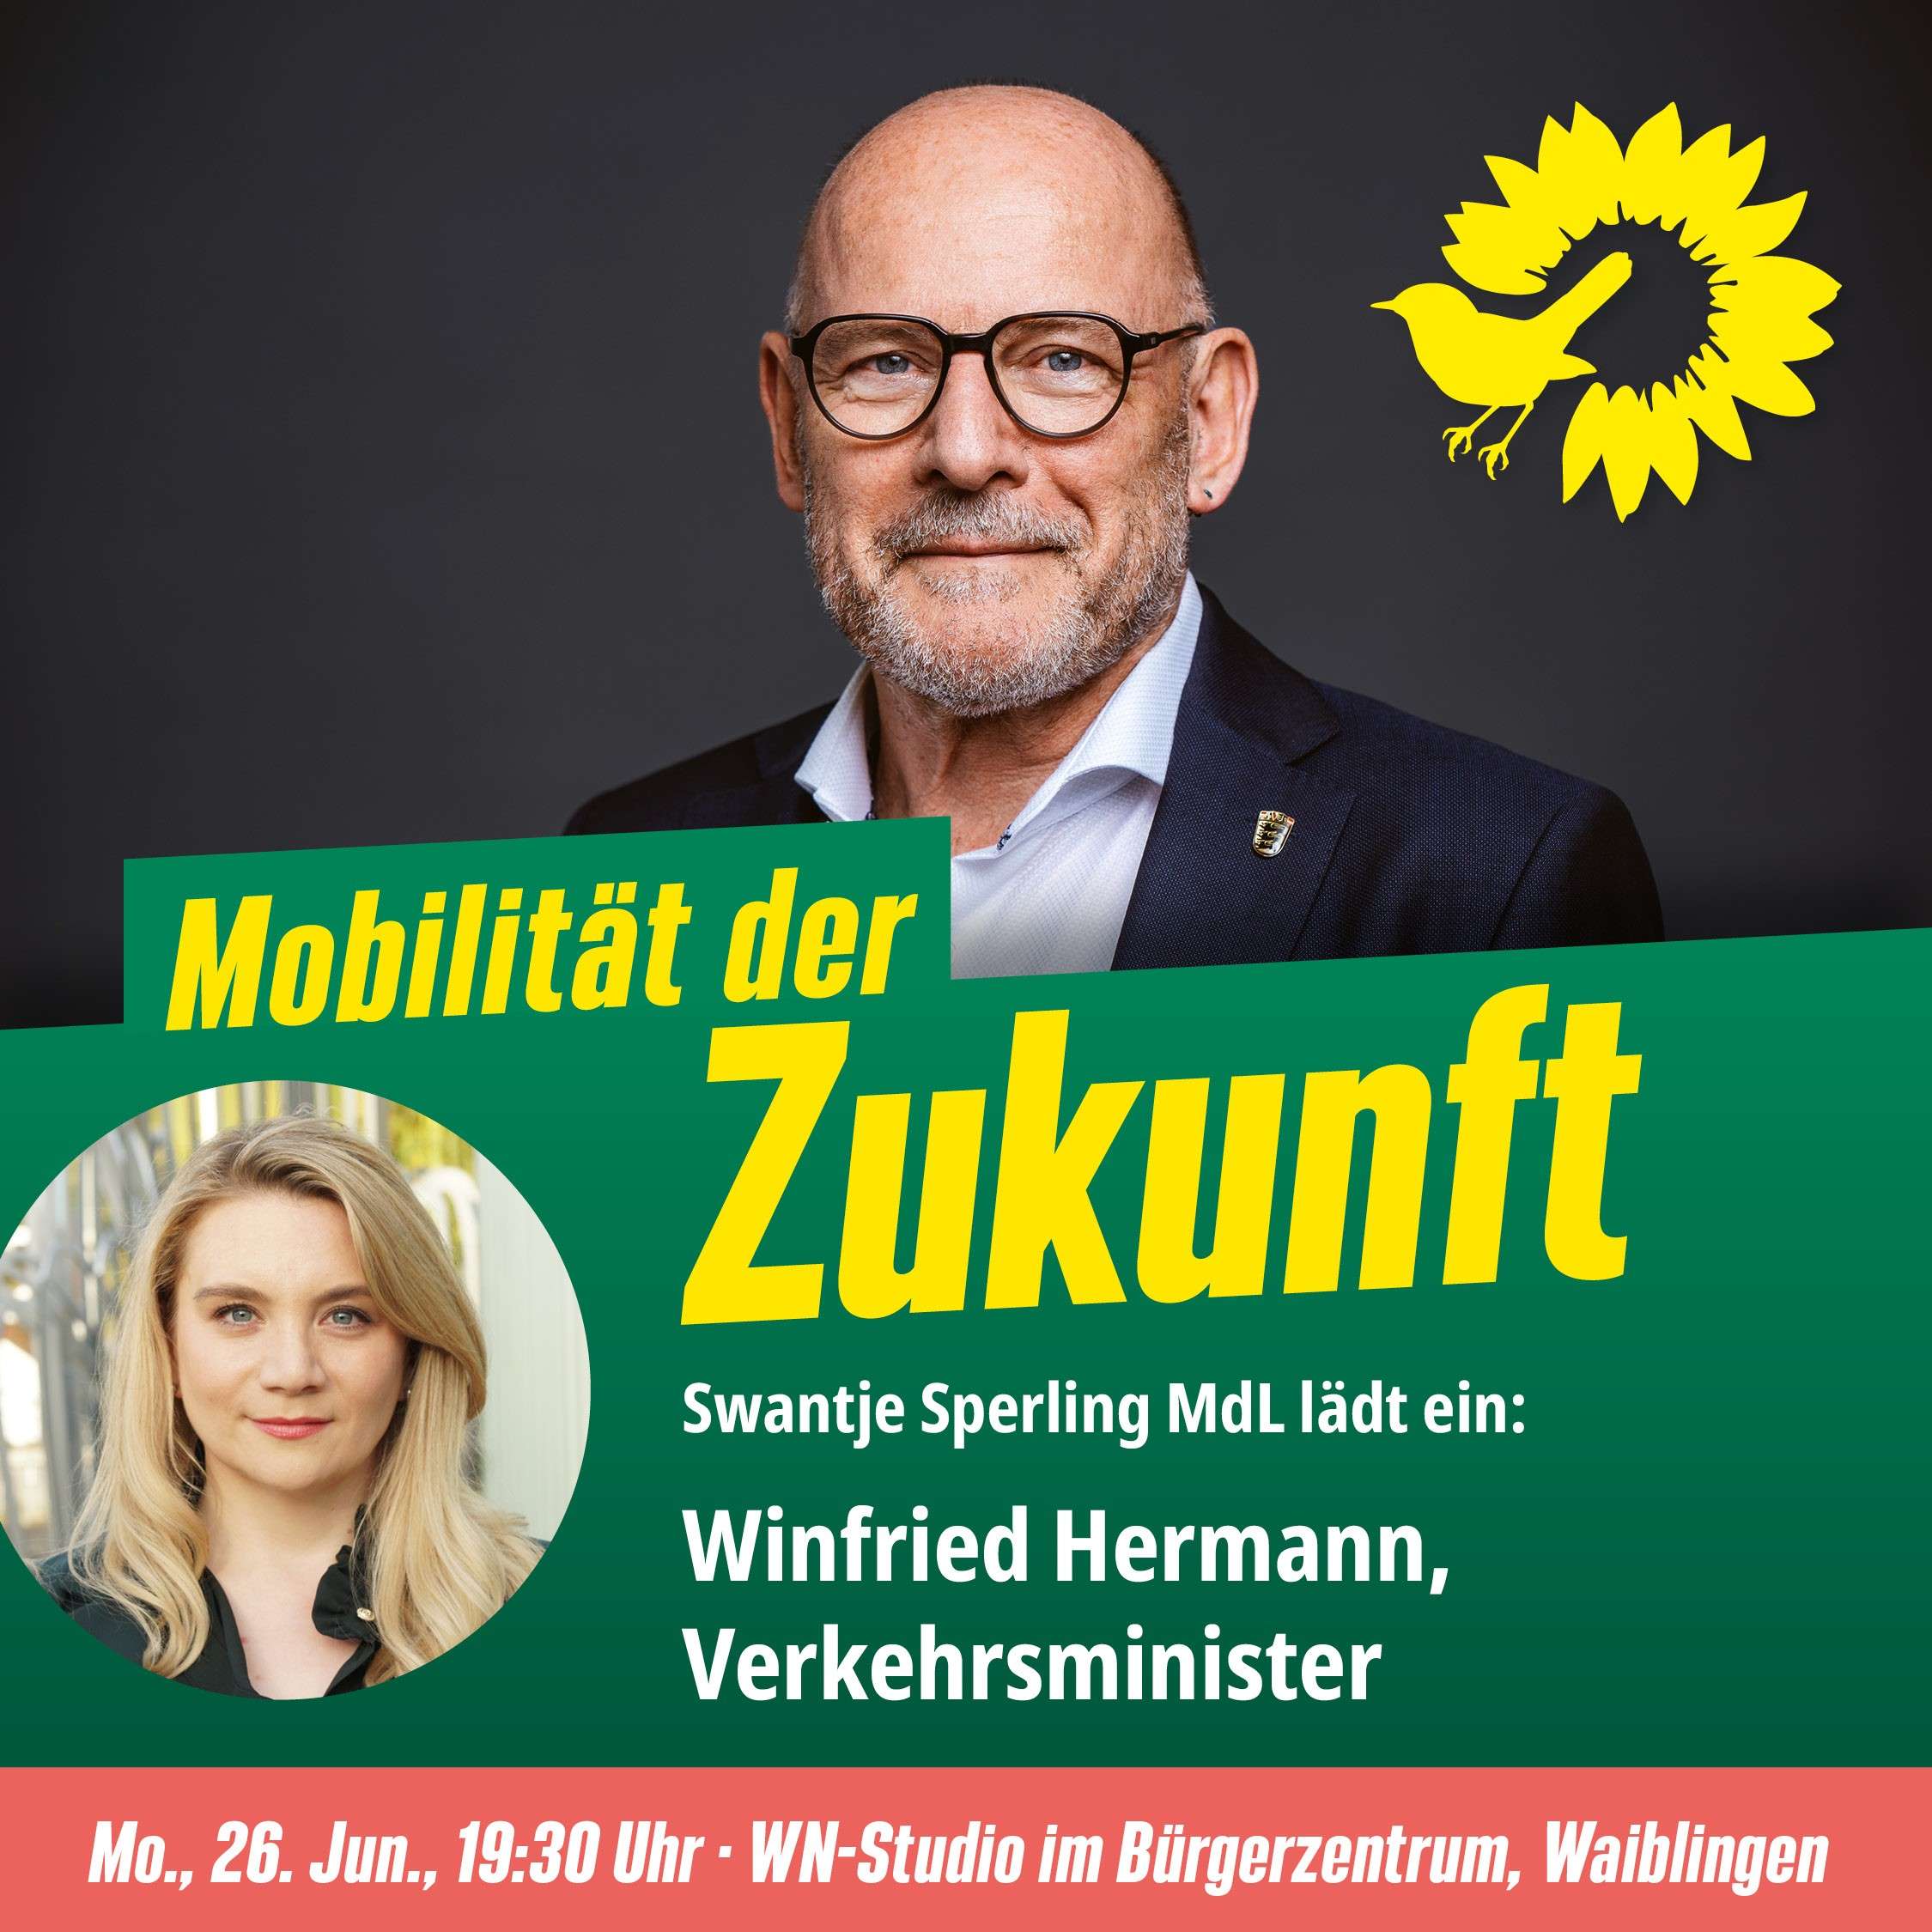 Verkehrsminister Winne Hermann in Waiblingen: Mobilität der Zukunft